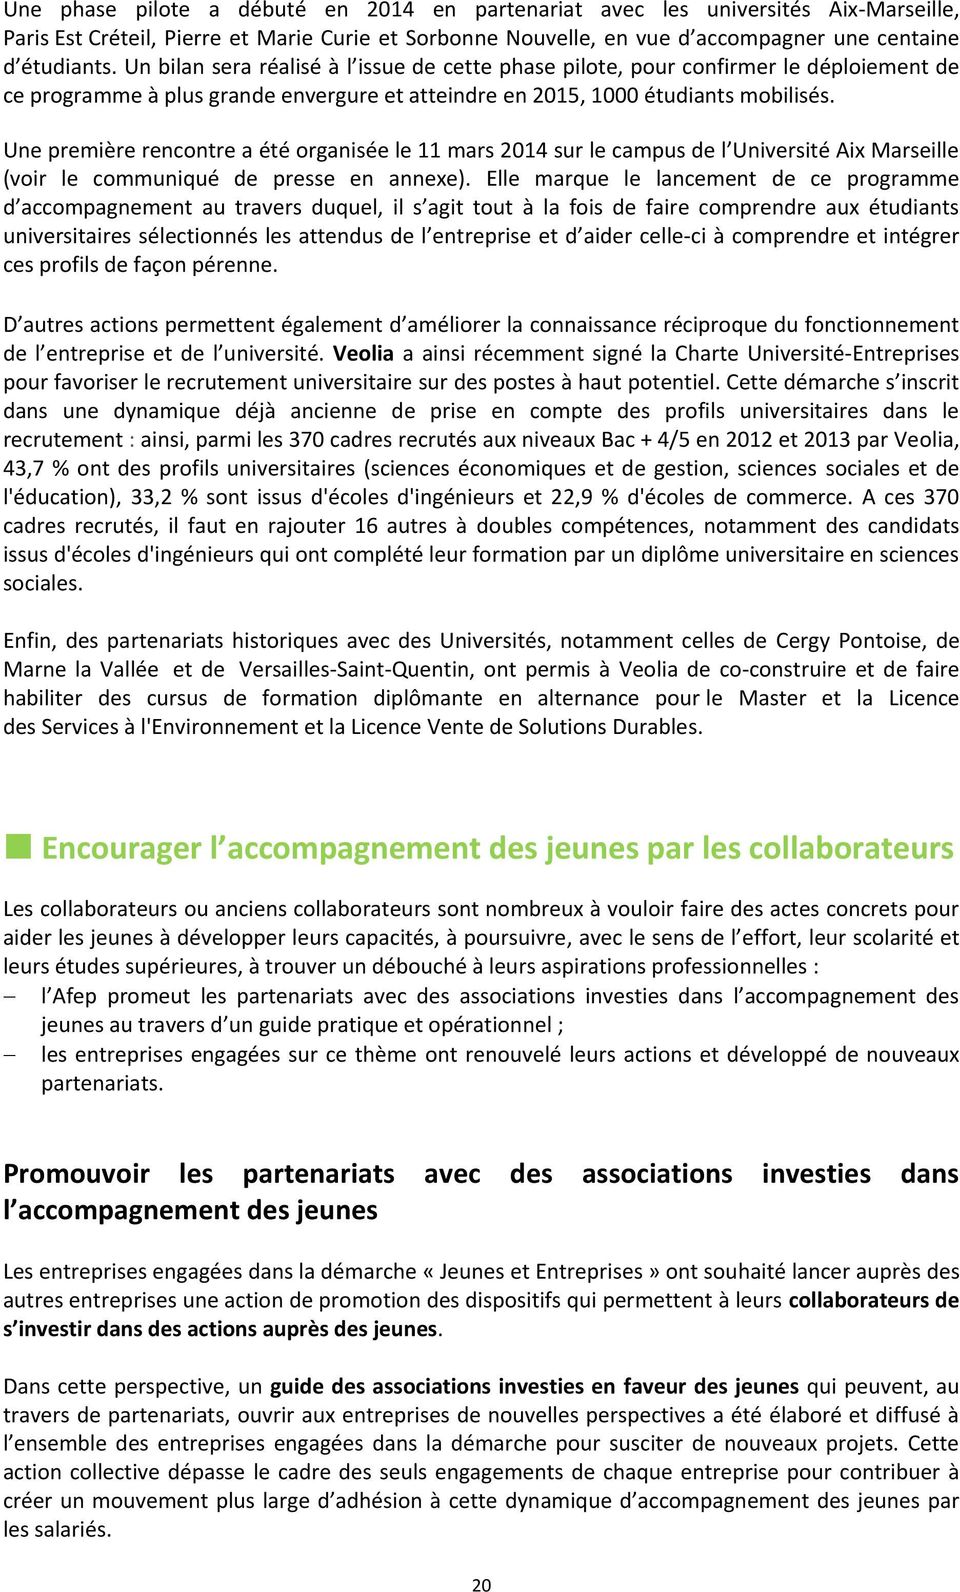 Une première rencontre a été organisée le 11 mars 2014 sur le campus de l Université Aix Marseille (voir le communiqué de presse en annexe).